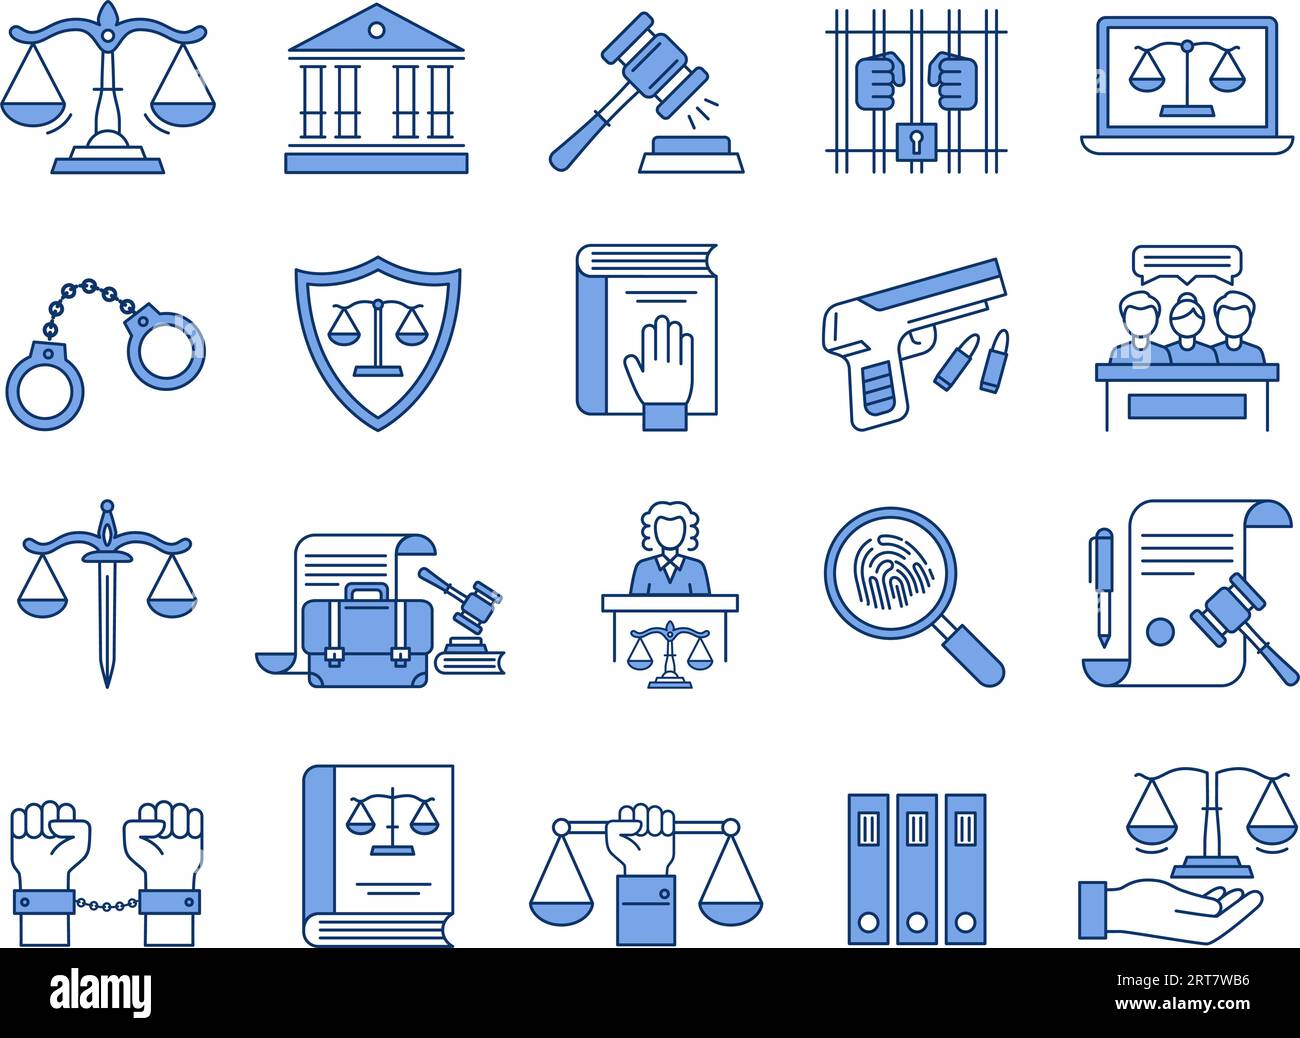 Regelsymbole. Symbole für Justiz, Gericht und Anwälte. Richter-Hammer, rechtliche Dokumente und Gefängnis lineare Vektor-Illustration-Set Stock Vektor